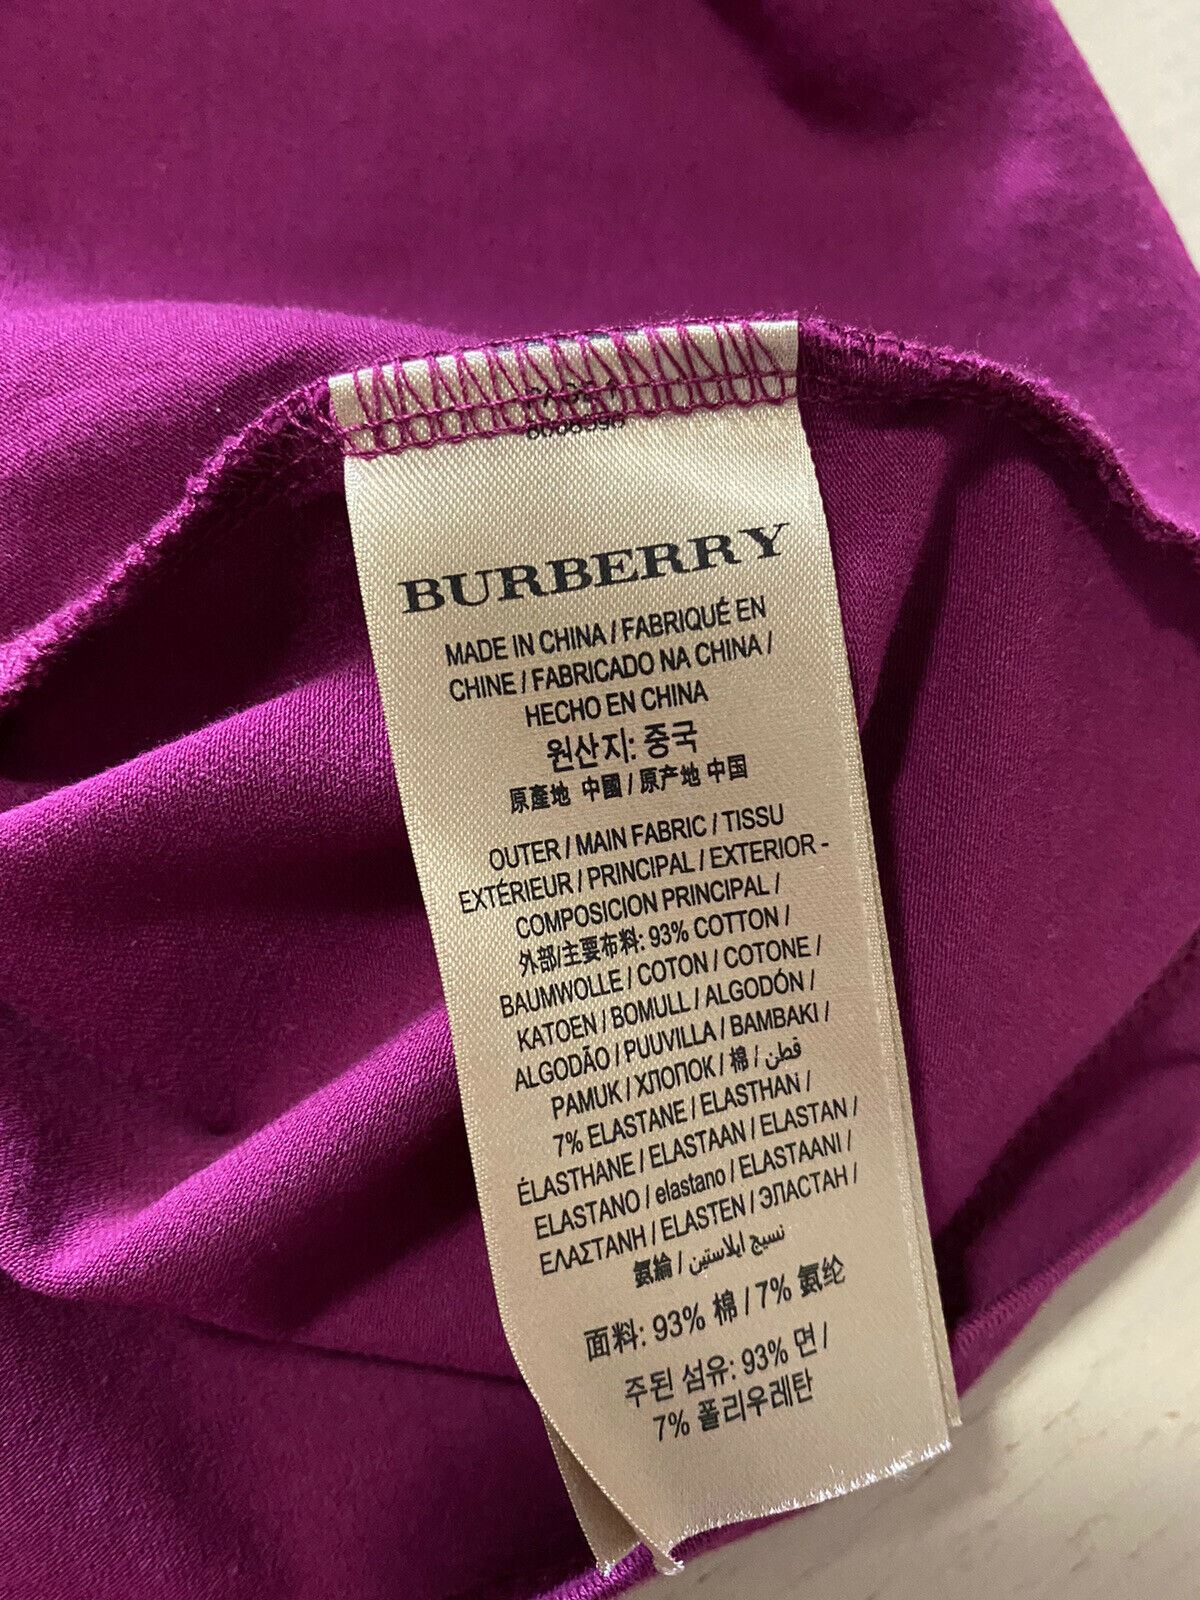 New Burberry Women’s Short Sleeve T Shirt Blouse Magenta Pink Size XL